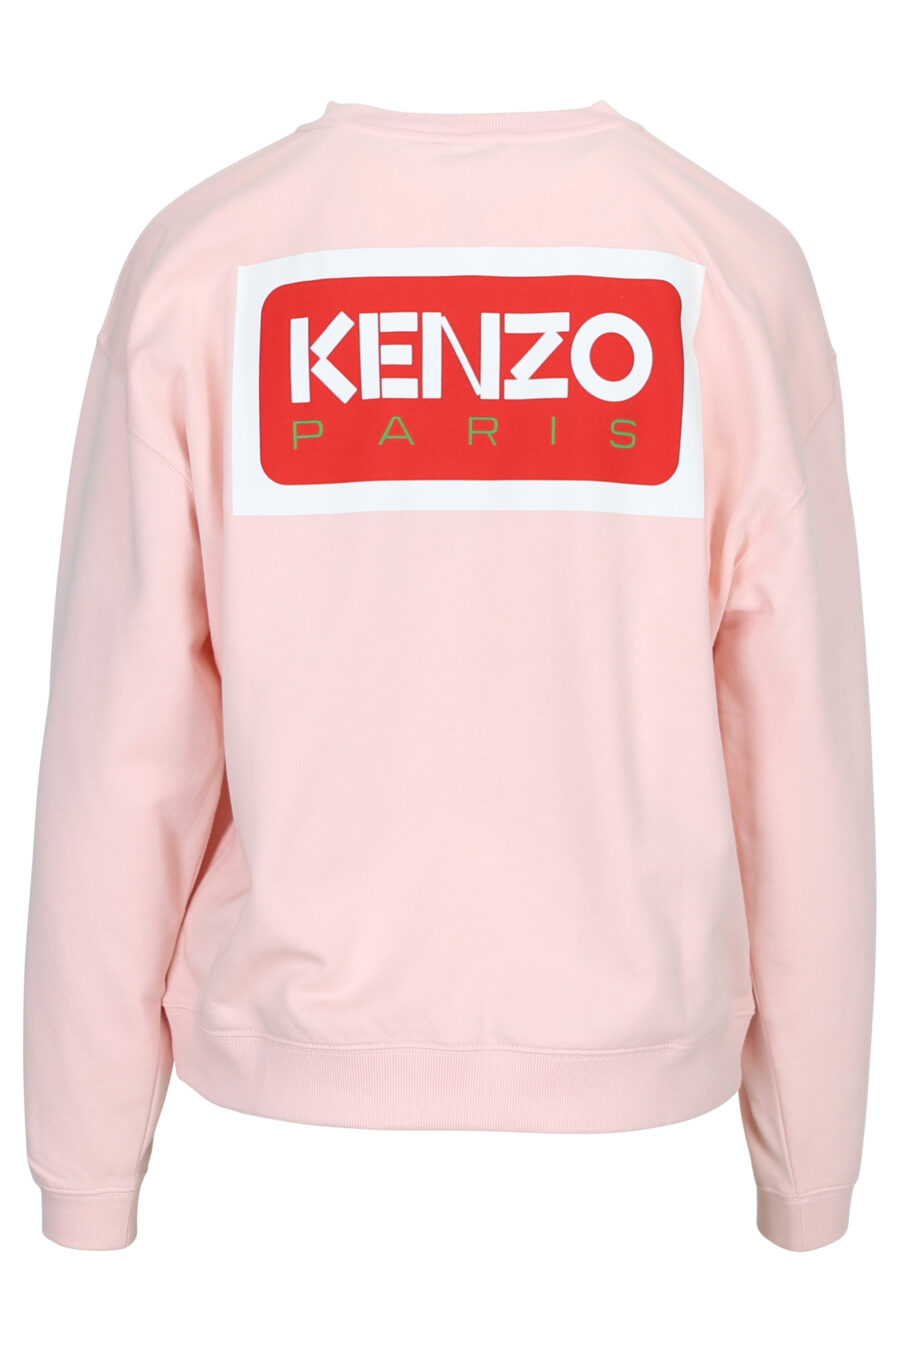 Camisola cor-de-rosa com maxilogo "kenzo paris" nas costas - 3612230515574 1